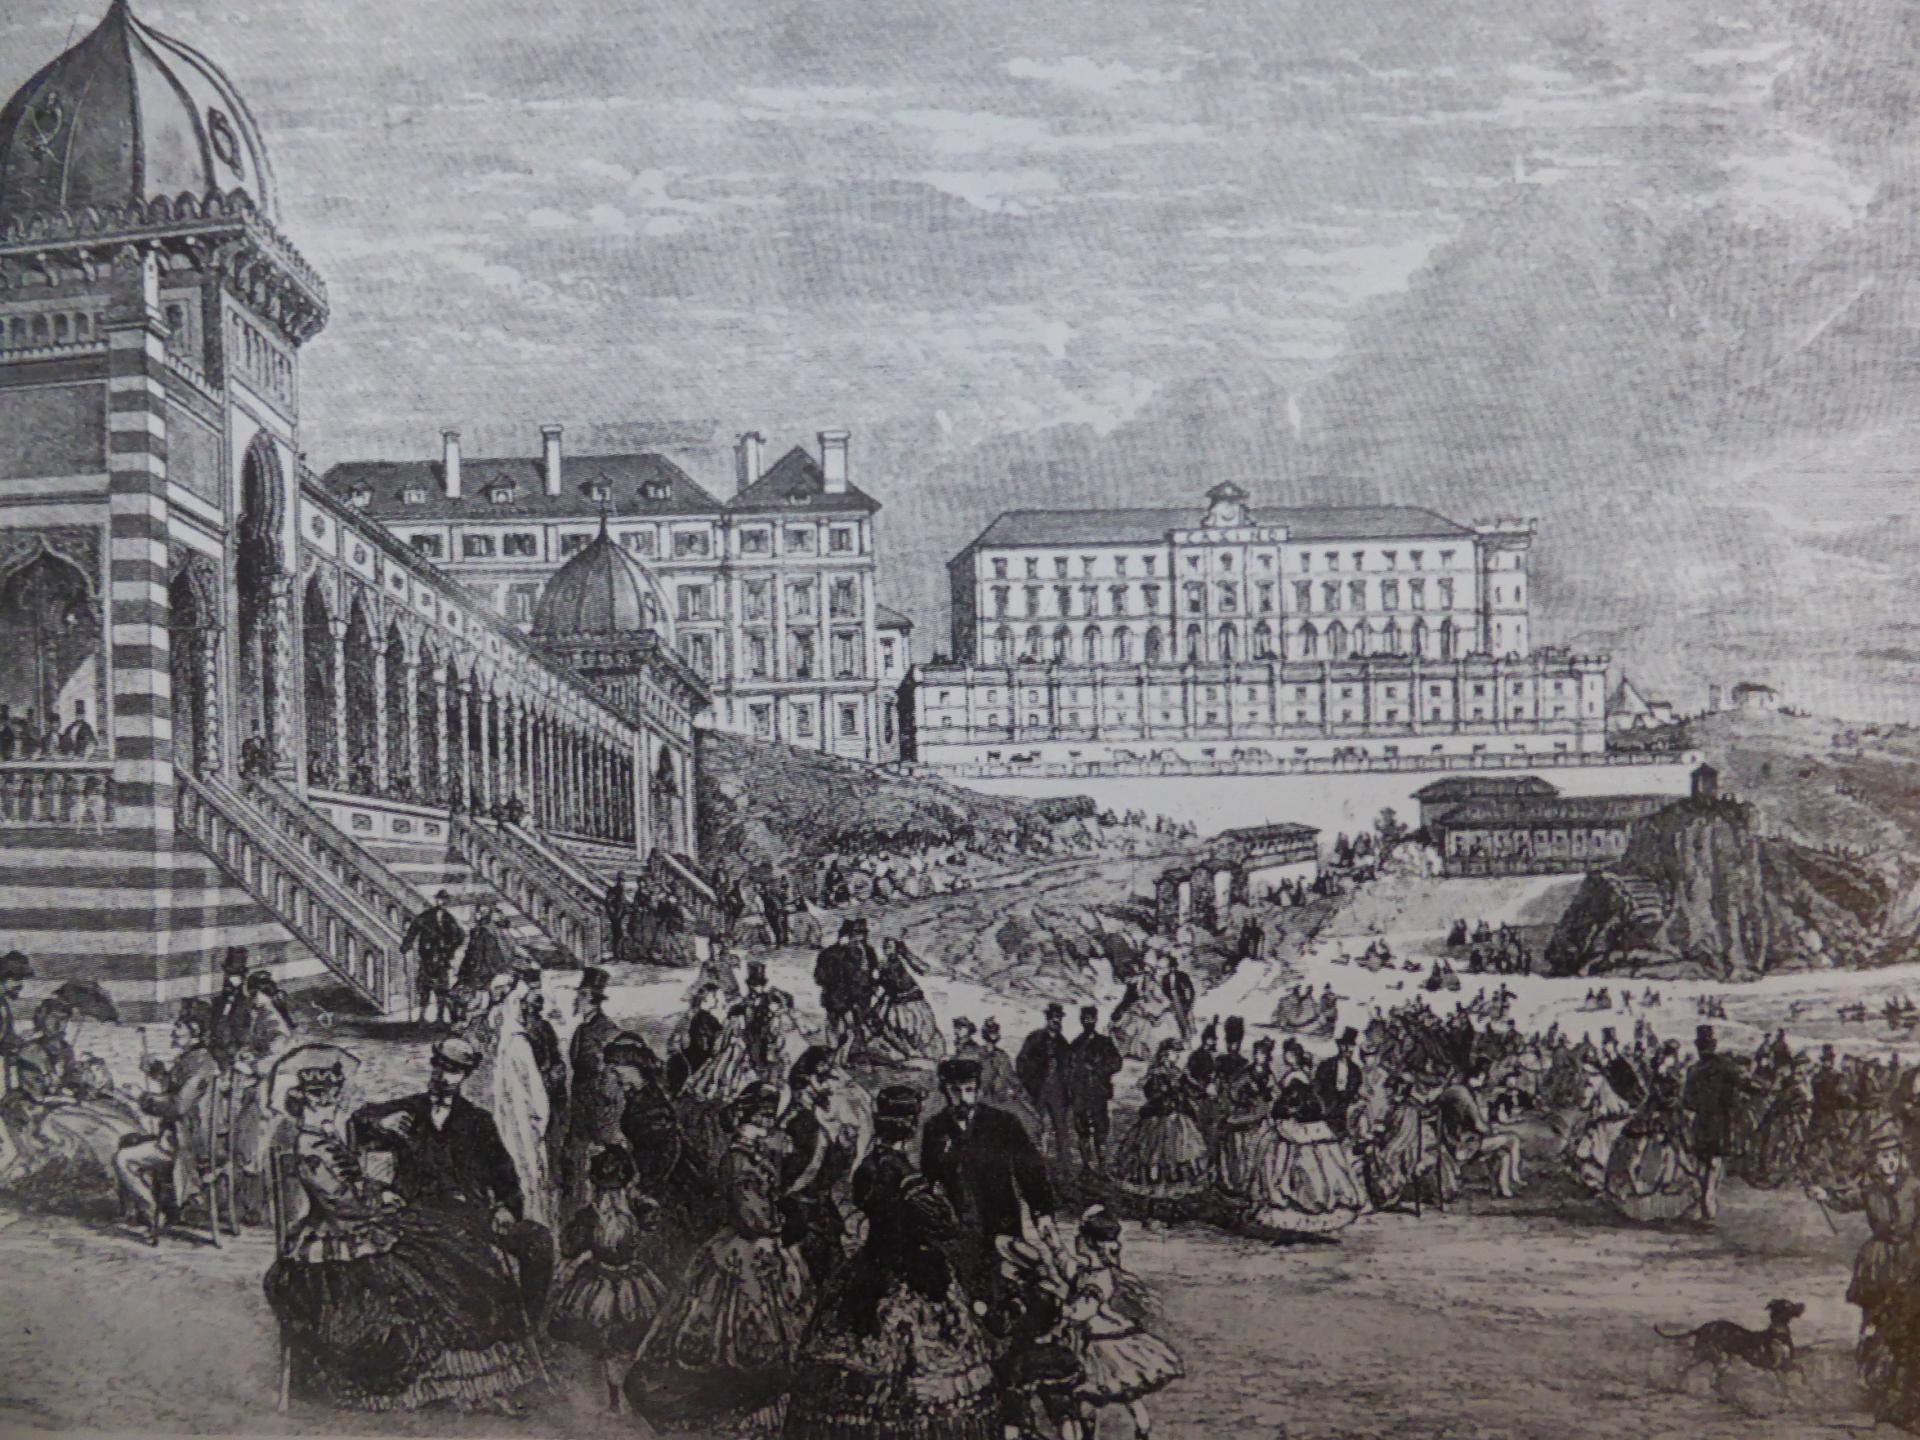 Bains Napoléon, Grand Hôtel, au fond, à gauche, et Casino Bellevue, à droite, lithographie XIXe